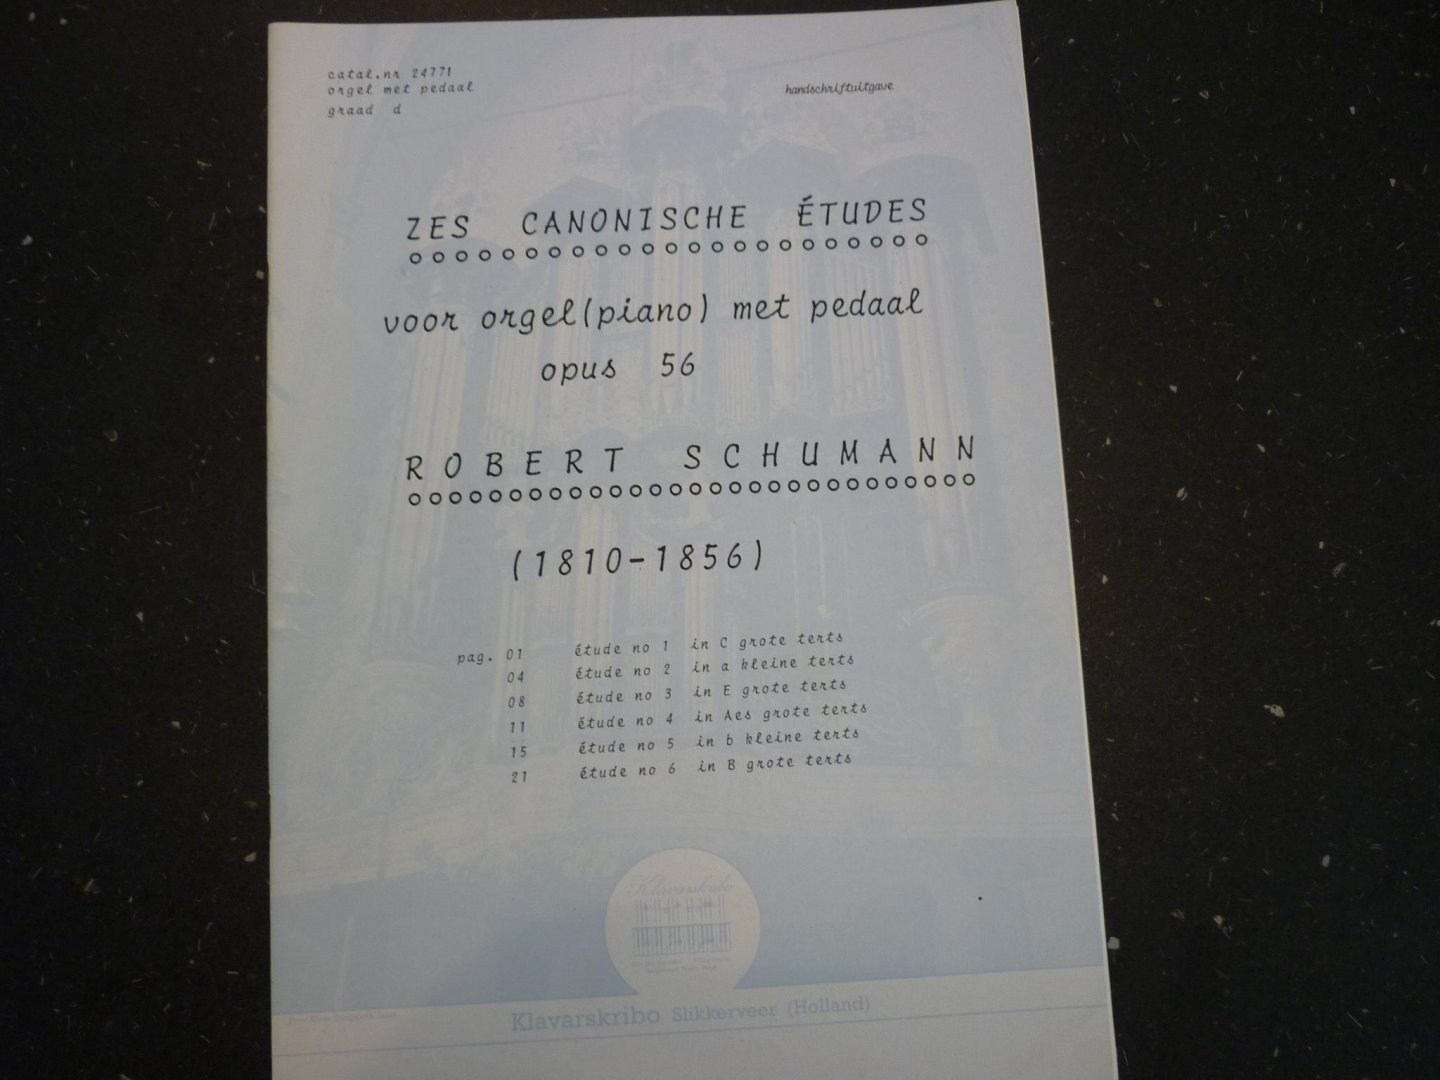 Schumann; Robert (1810-1856) - Zes Canonische Etuden voor orgel (piano); Opus 56  /  Klavarskribo